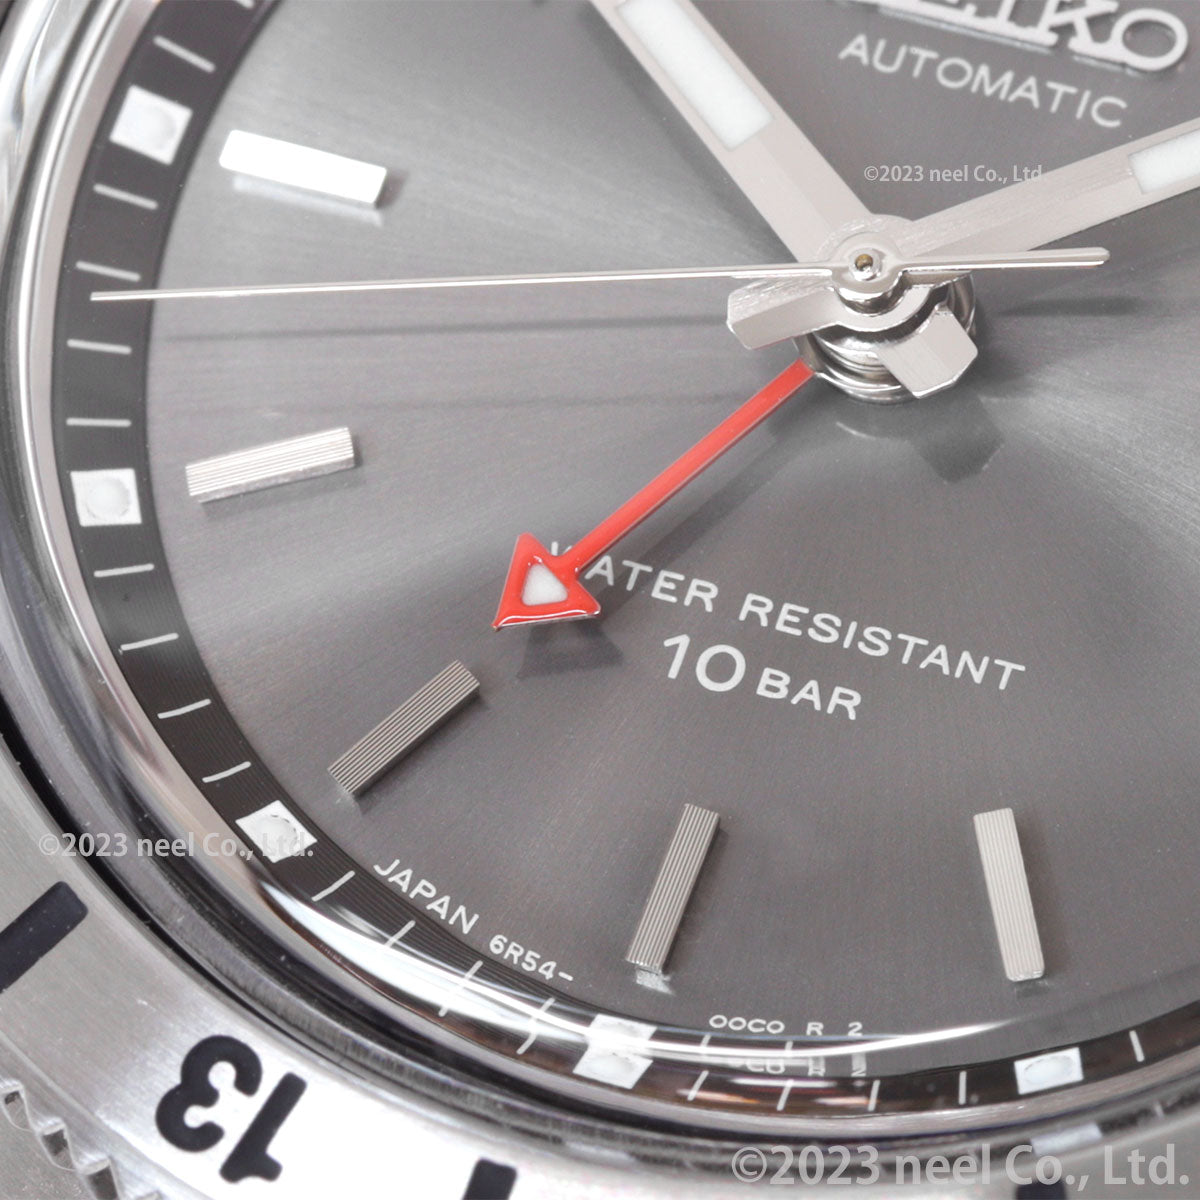 セイコー プロスペックス SEIKO PROSPEX ナビゲータータイマー 復刻 メカニカル 自動巻き コアショップ専用 流通限定モデル 腕時計 メンズ SBEJ015